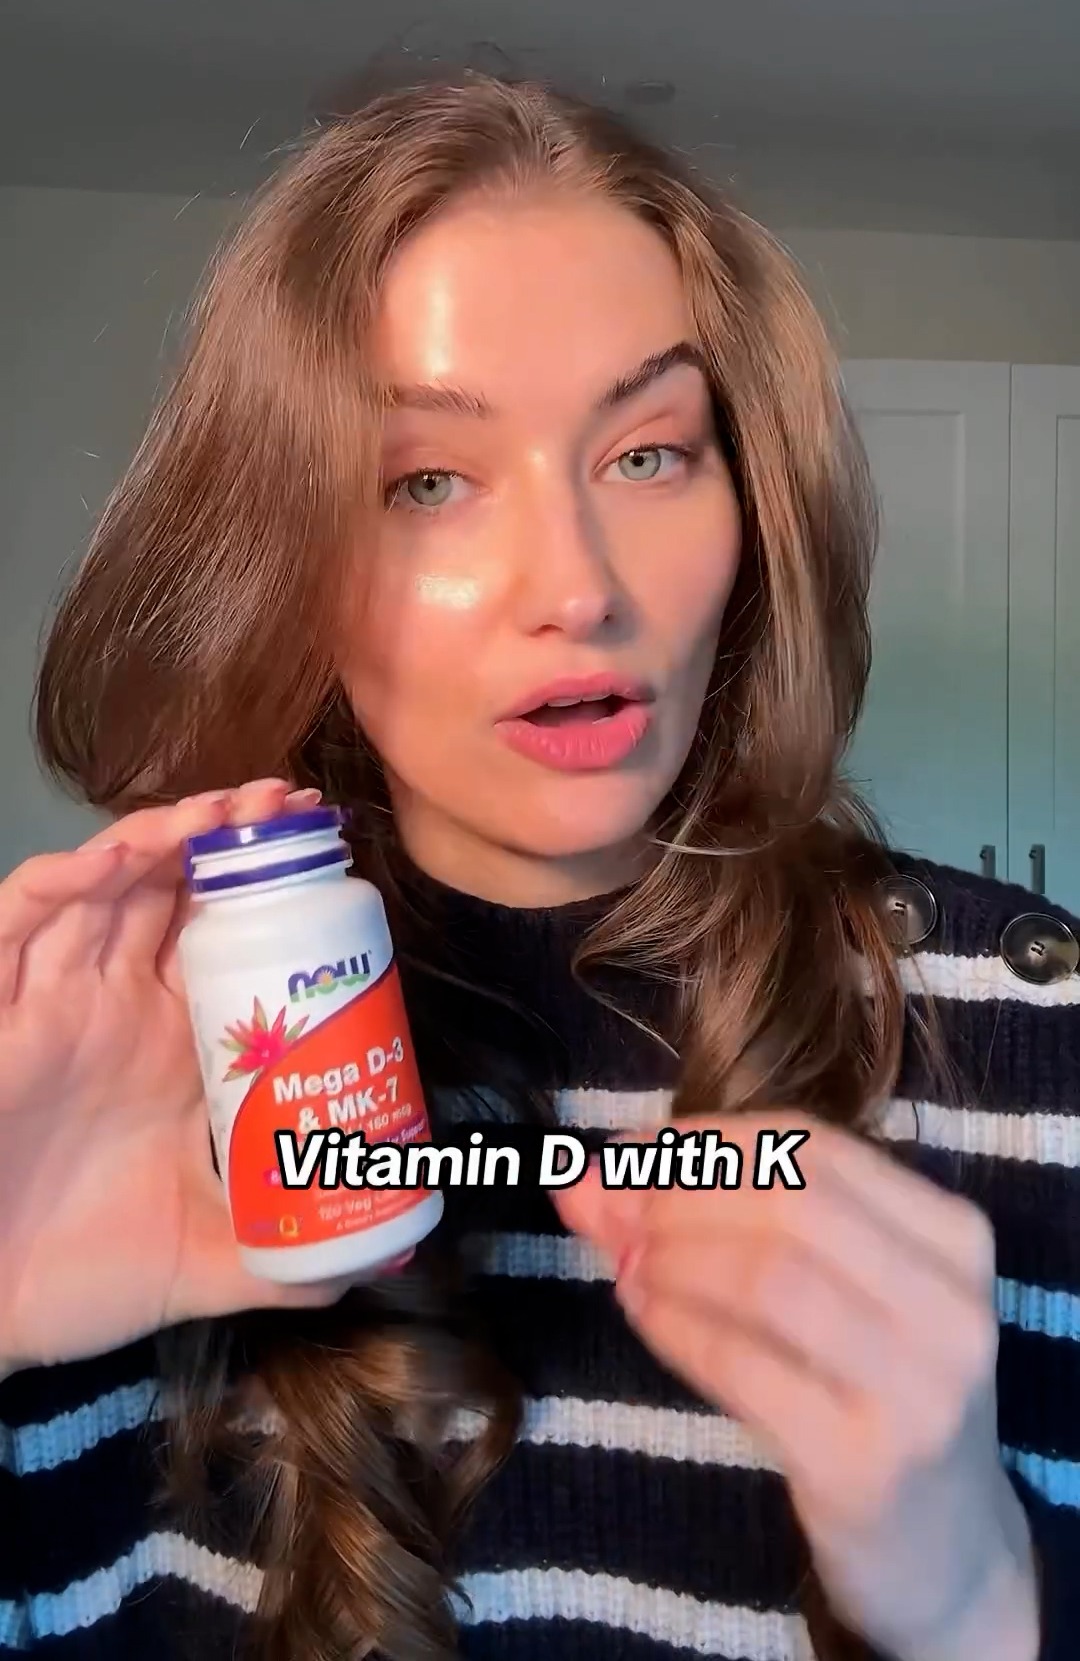 Pour favoriser la croissance des cheveux et des ongles, elle a pris des suppléments de vitamine D.